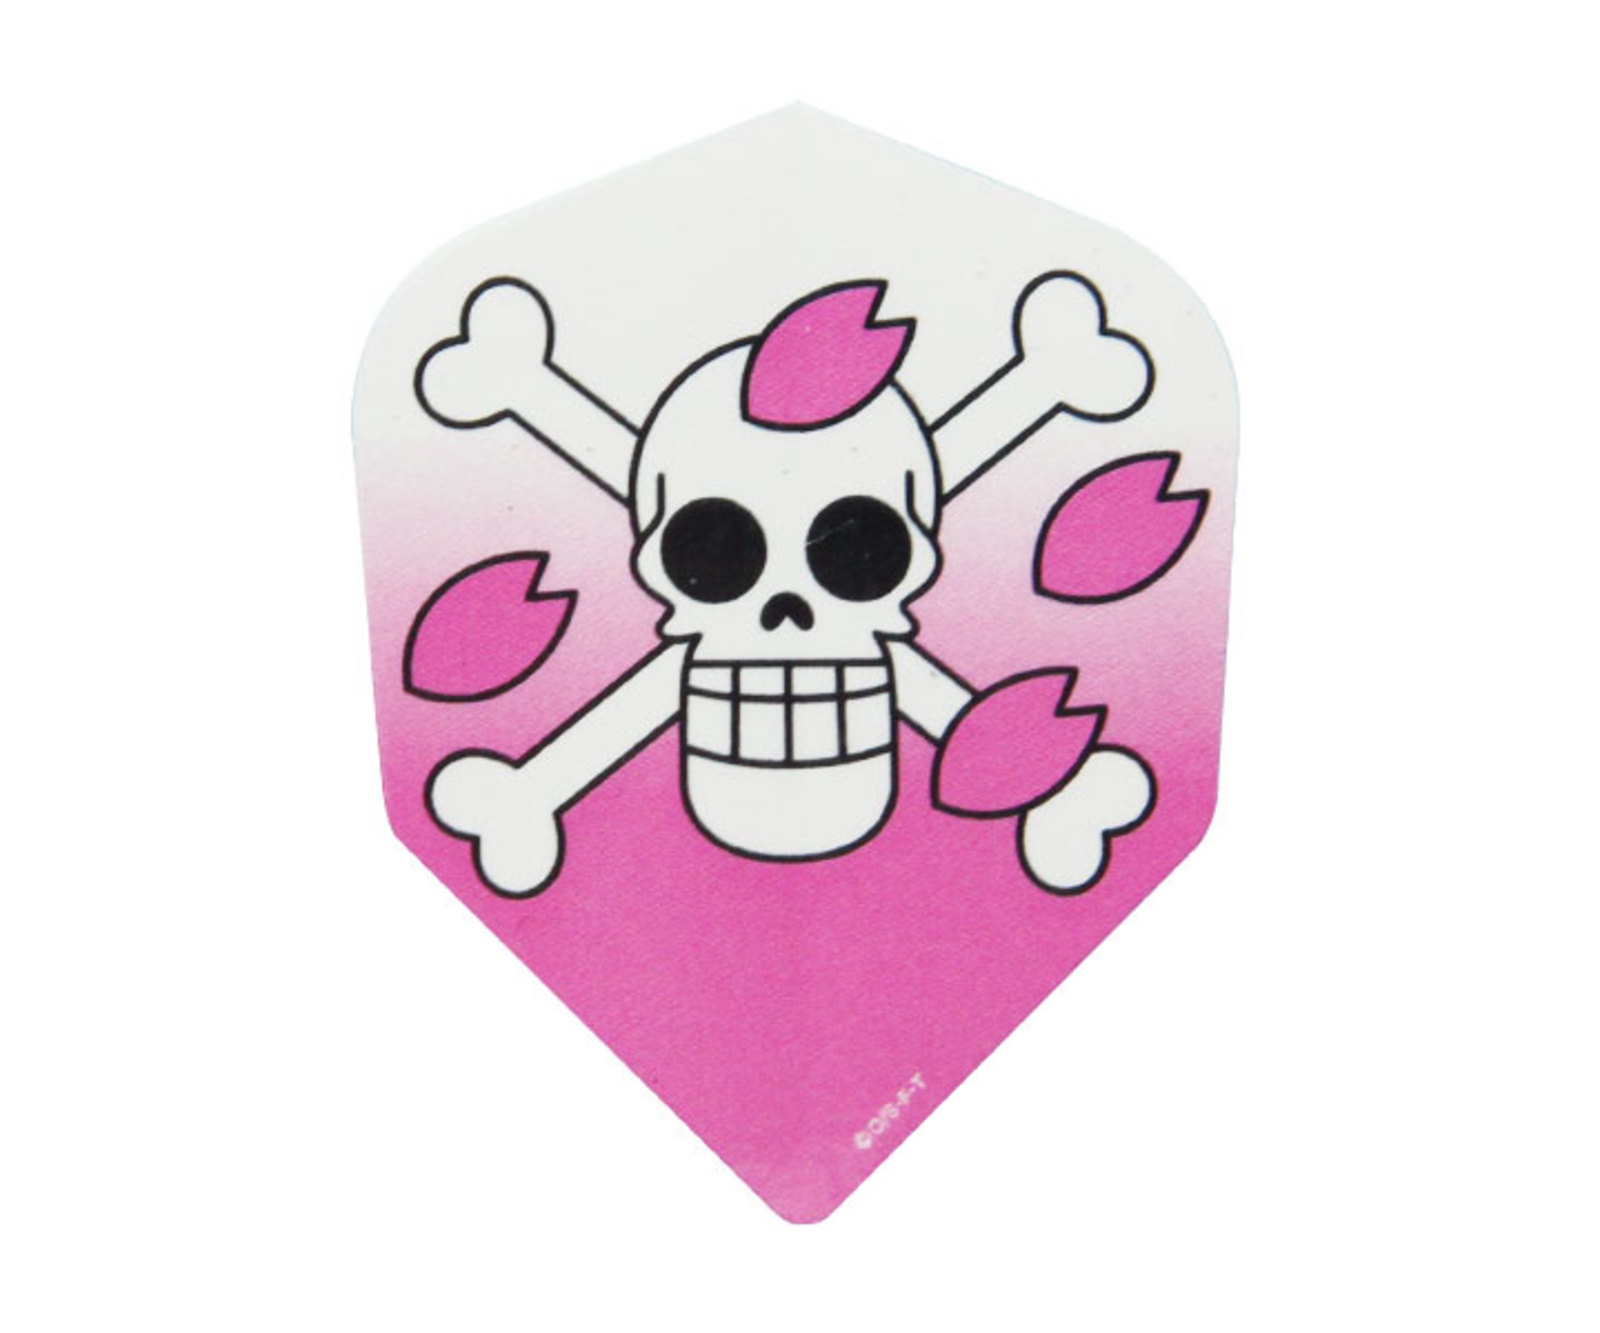 ダーツフライト ファーイースト ワンピース 海賊旗チョッパー ピンク ダーツ用品はエスダーツ 延べ70万人以上が利用しているダーツショップ